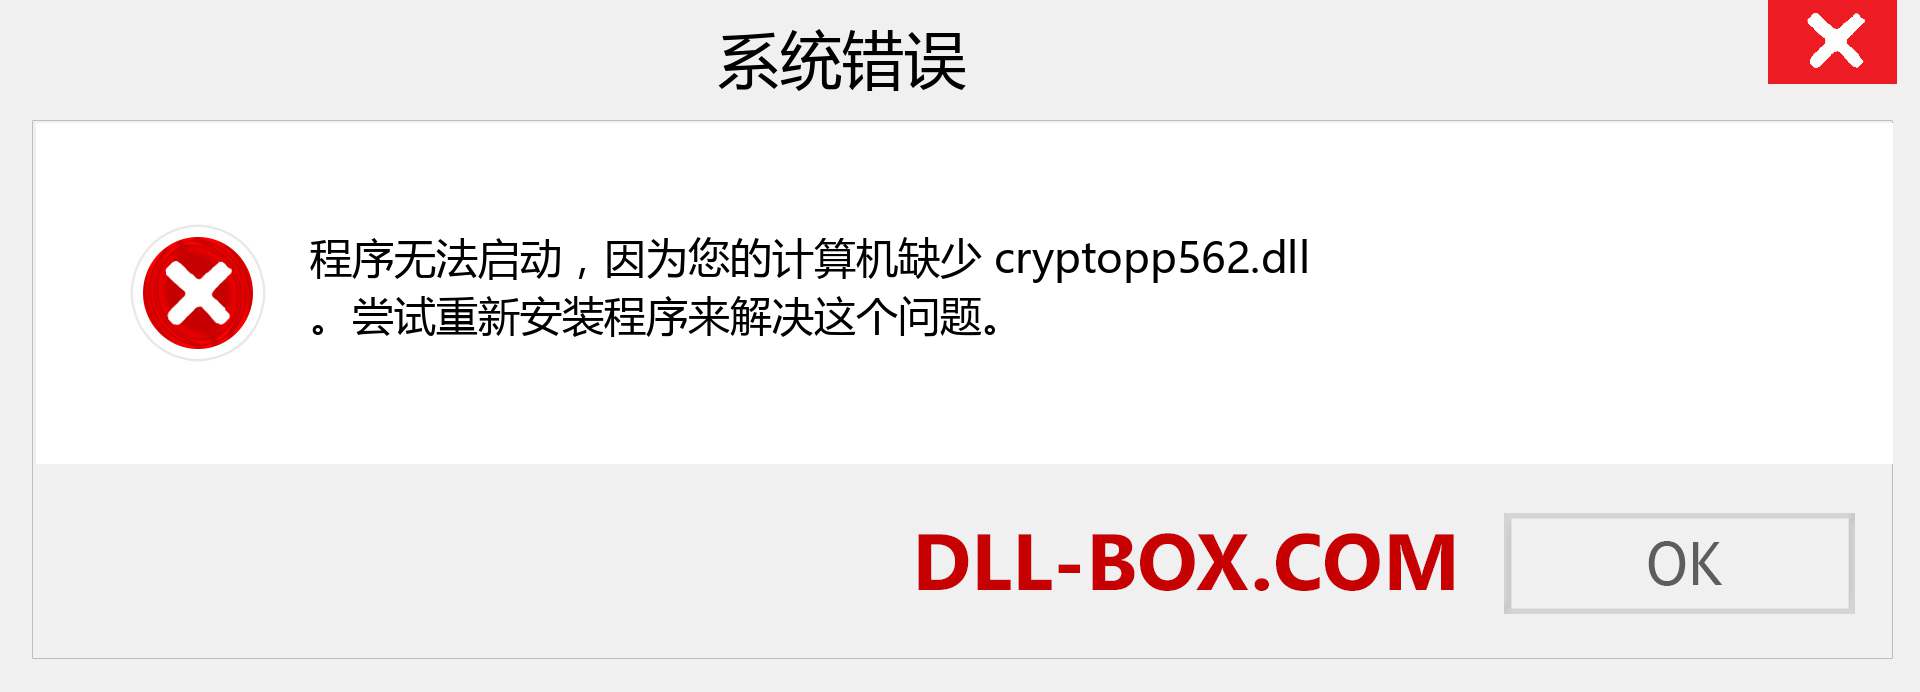 cryptopp562.dll 文件丢失？。 适用于 Windows 7、8、10 的下载 - 修复 Windows、照片、图像上的 cryptopp562 dll 丢失错误